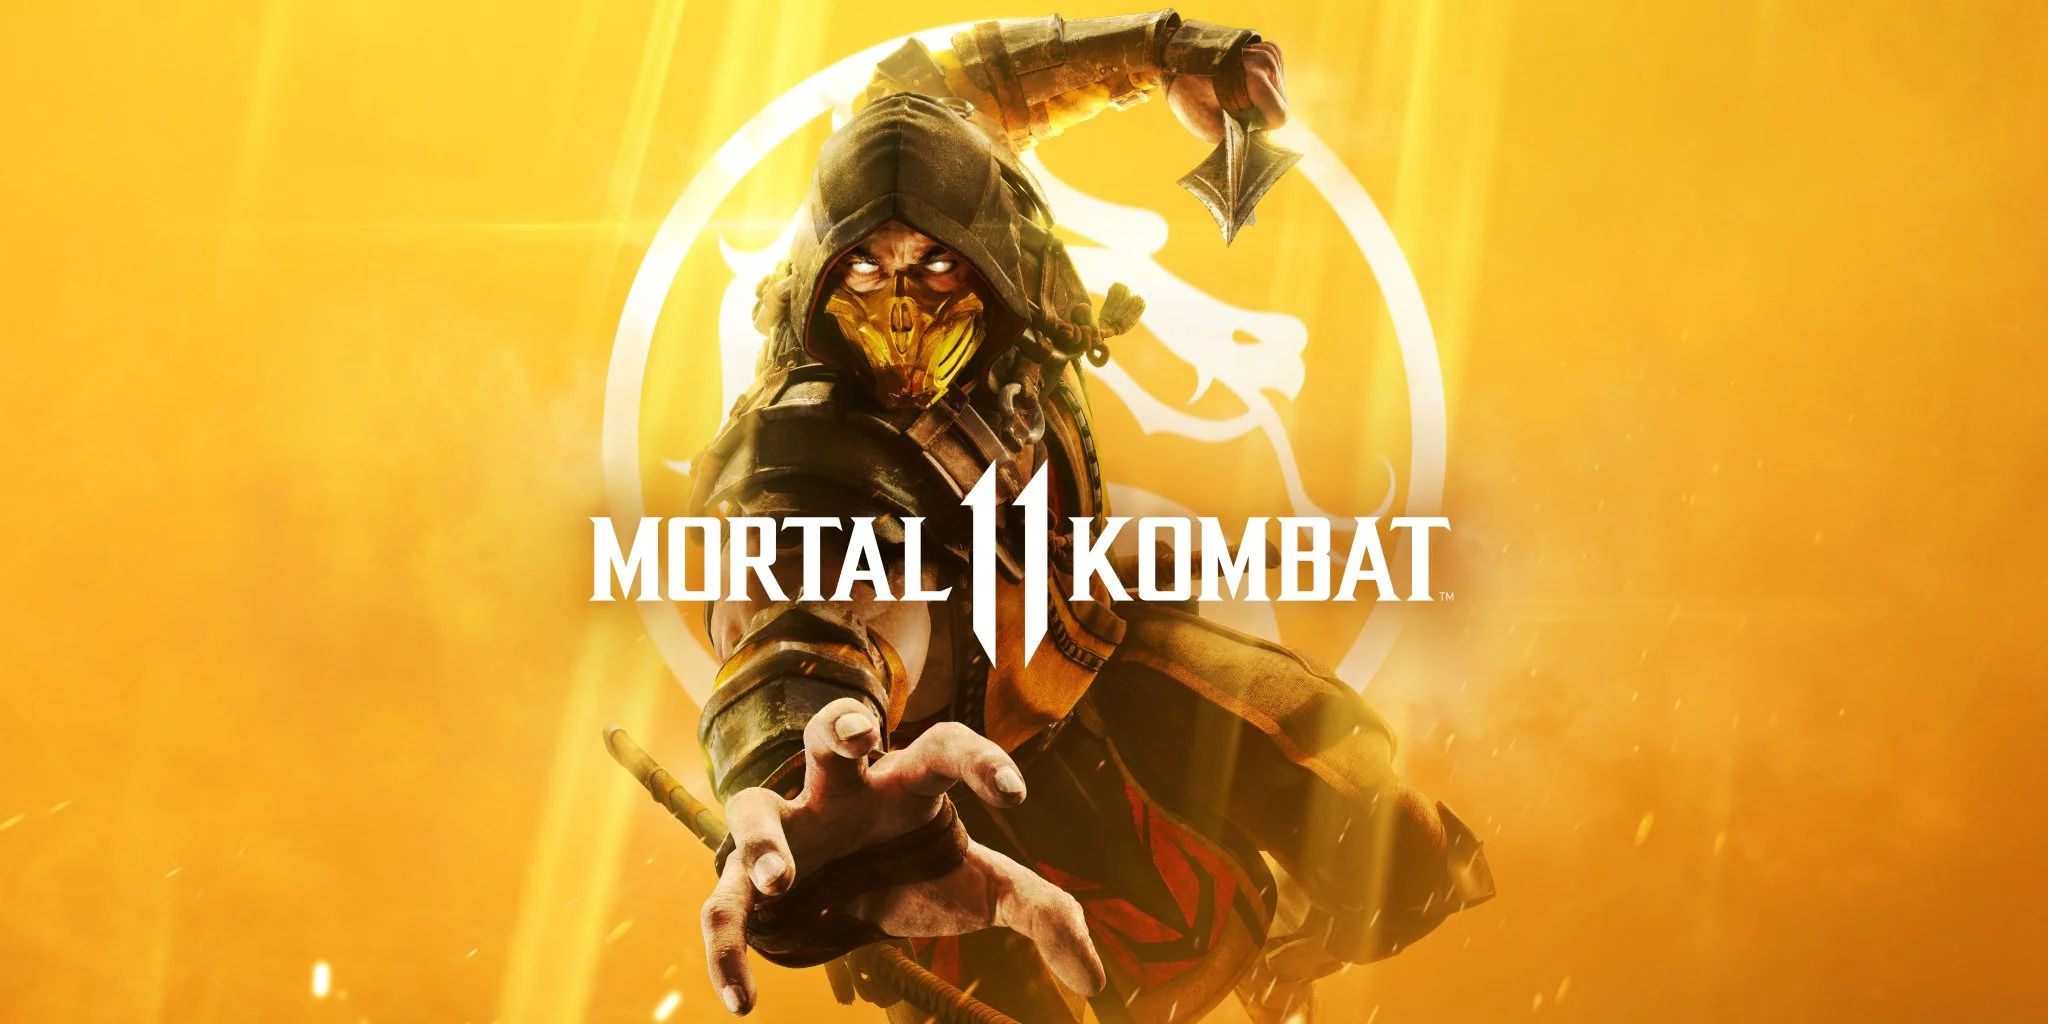 23 апреля на PC, Xbox One, PS4 и Switch вышла Mortal Kombat 11. Прошло две недели и теперь, наконец, можно посмотреть на игру трезво, без опьянения хайпом, без эмоций от первых впечатлений — просто оценить ее как игру, которую вы раздумываете купить. Что изменилось, что осталось прежним, насколько тяжело в ней разобраться и надолго ли ее хватит. После 140 часов в игре я готов, наконец, вынести вердикт новой части франшизы, в которую влюбился 20 лет назад.